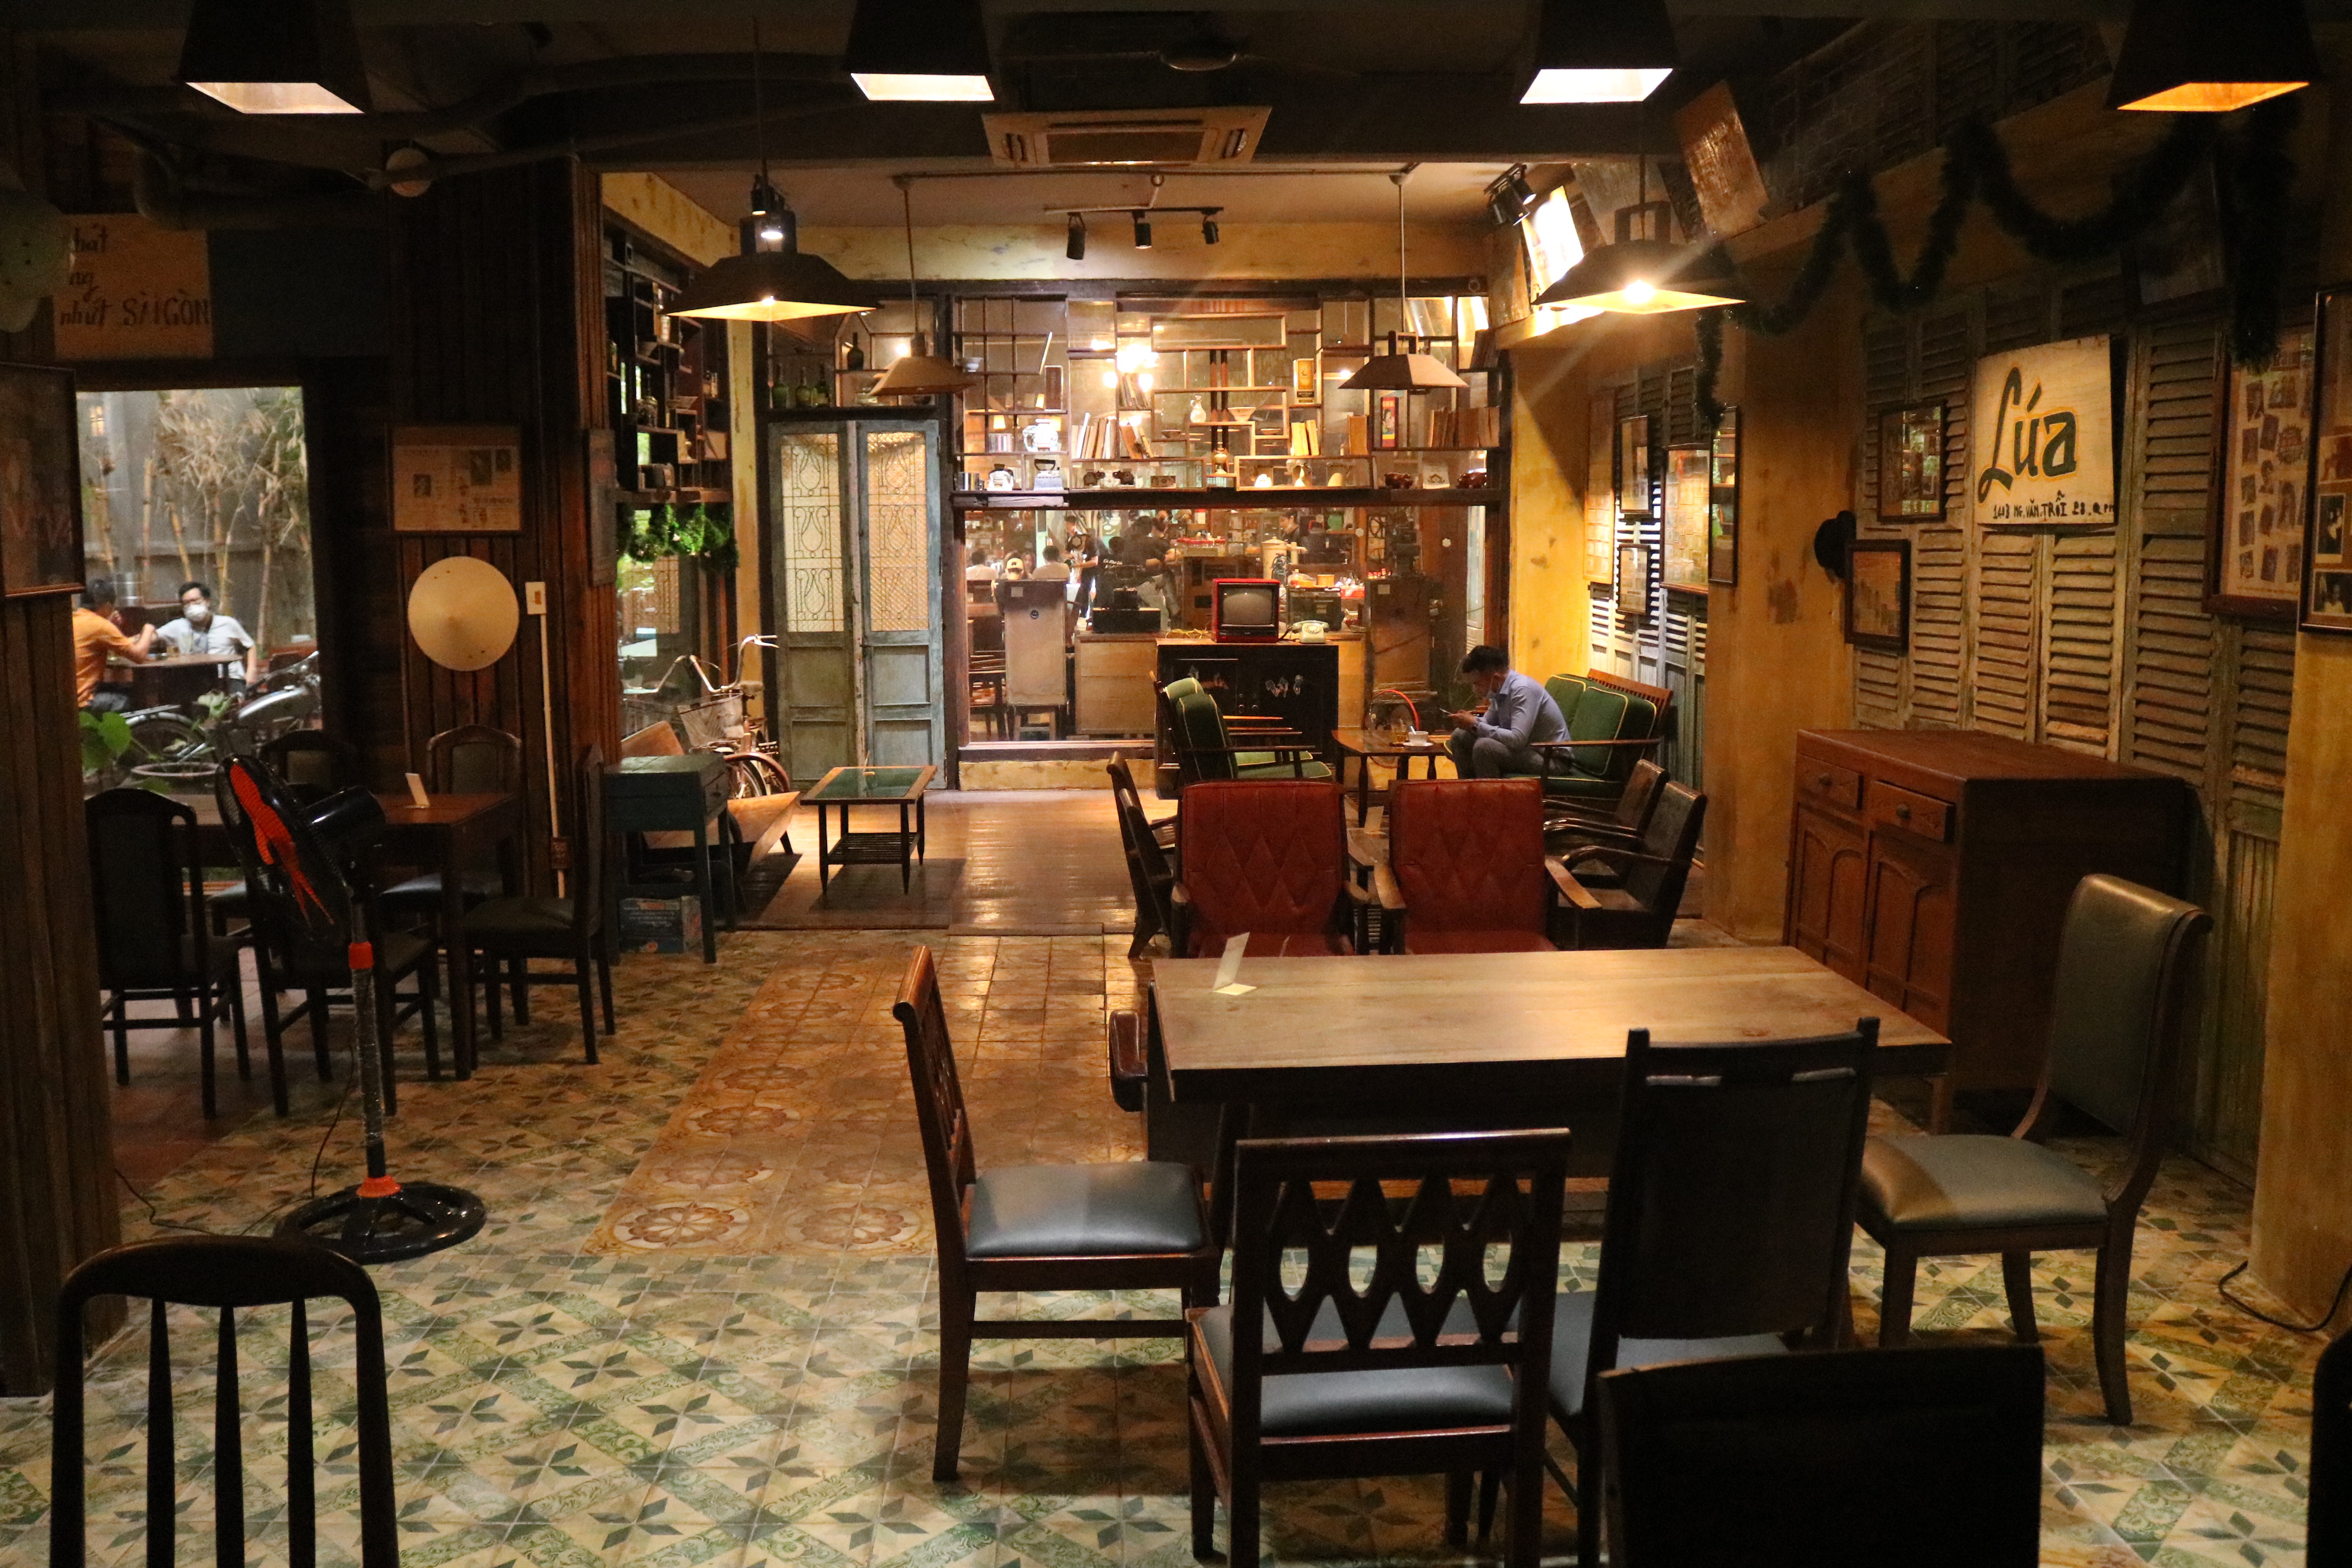 Take a trip to old Saigon at this café